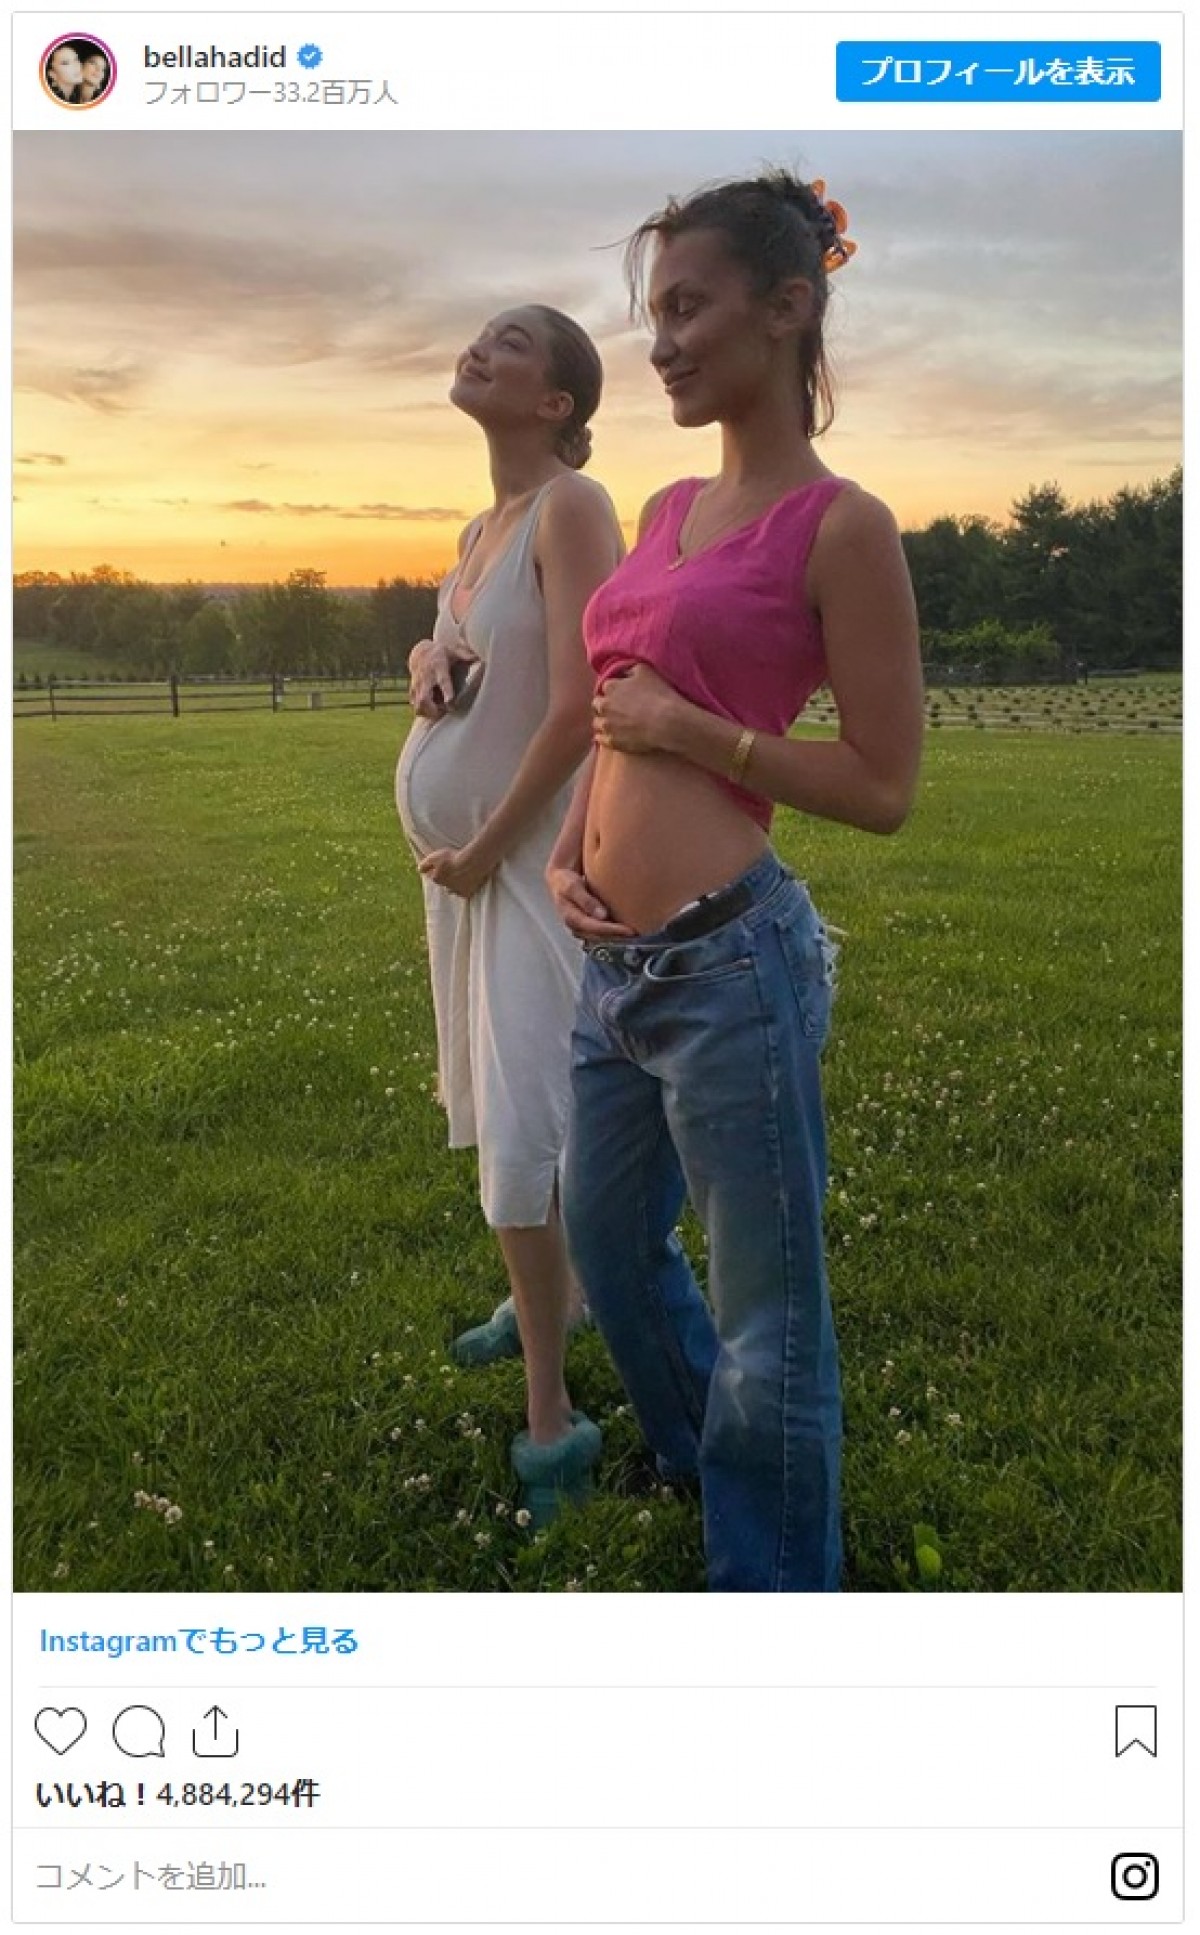 ベラ ハディッド 妊娠中の姉ジジと並んだ ふっくらお腹 2ショットに反響 年9月17日 セレブ ゴシップ ニュース クランクイン